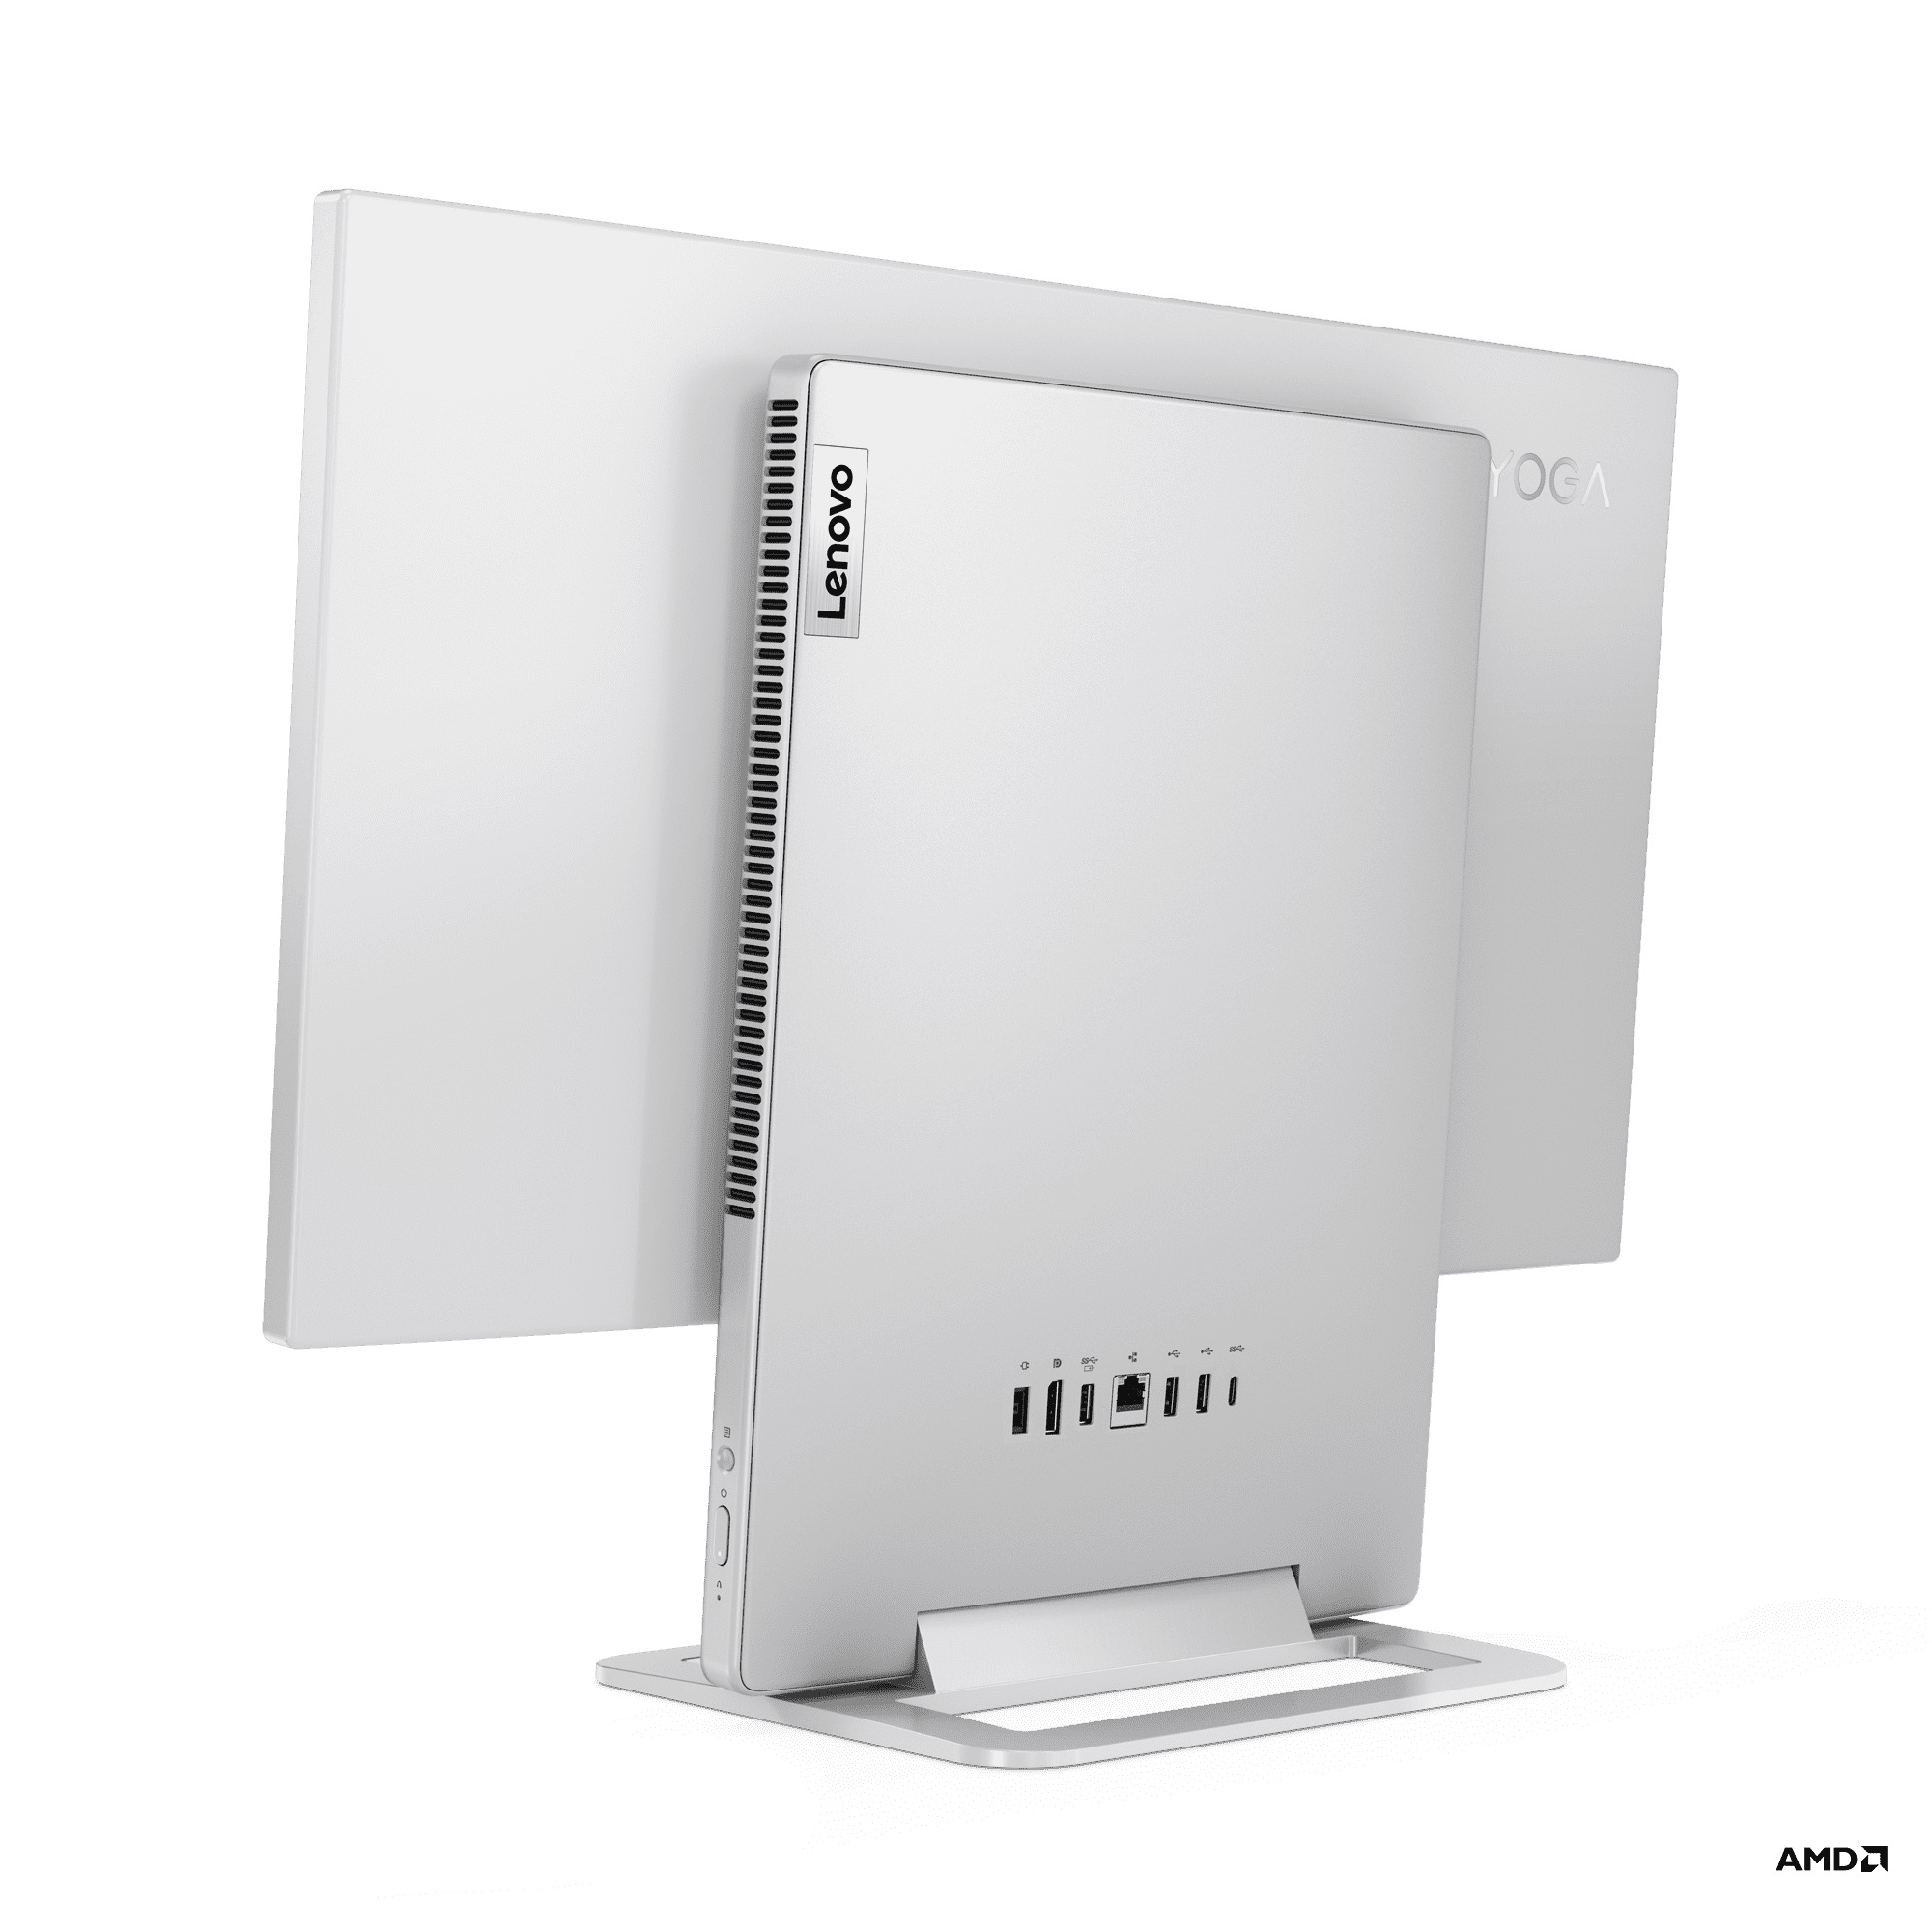 Lenovo công bố loạt máy tính Yoga thế hệ mới: Yoga Slim 9i, Yoga Slim 7i Pro X và Yoga Slim 7i Carbon